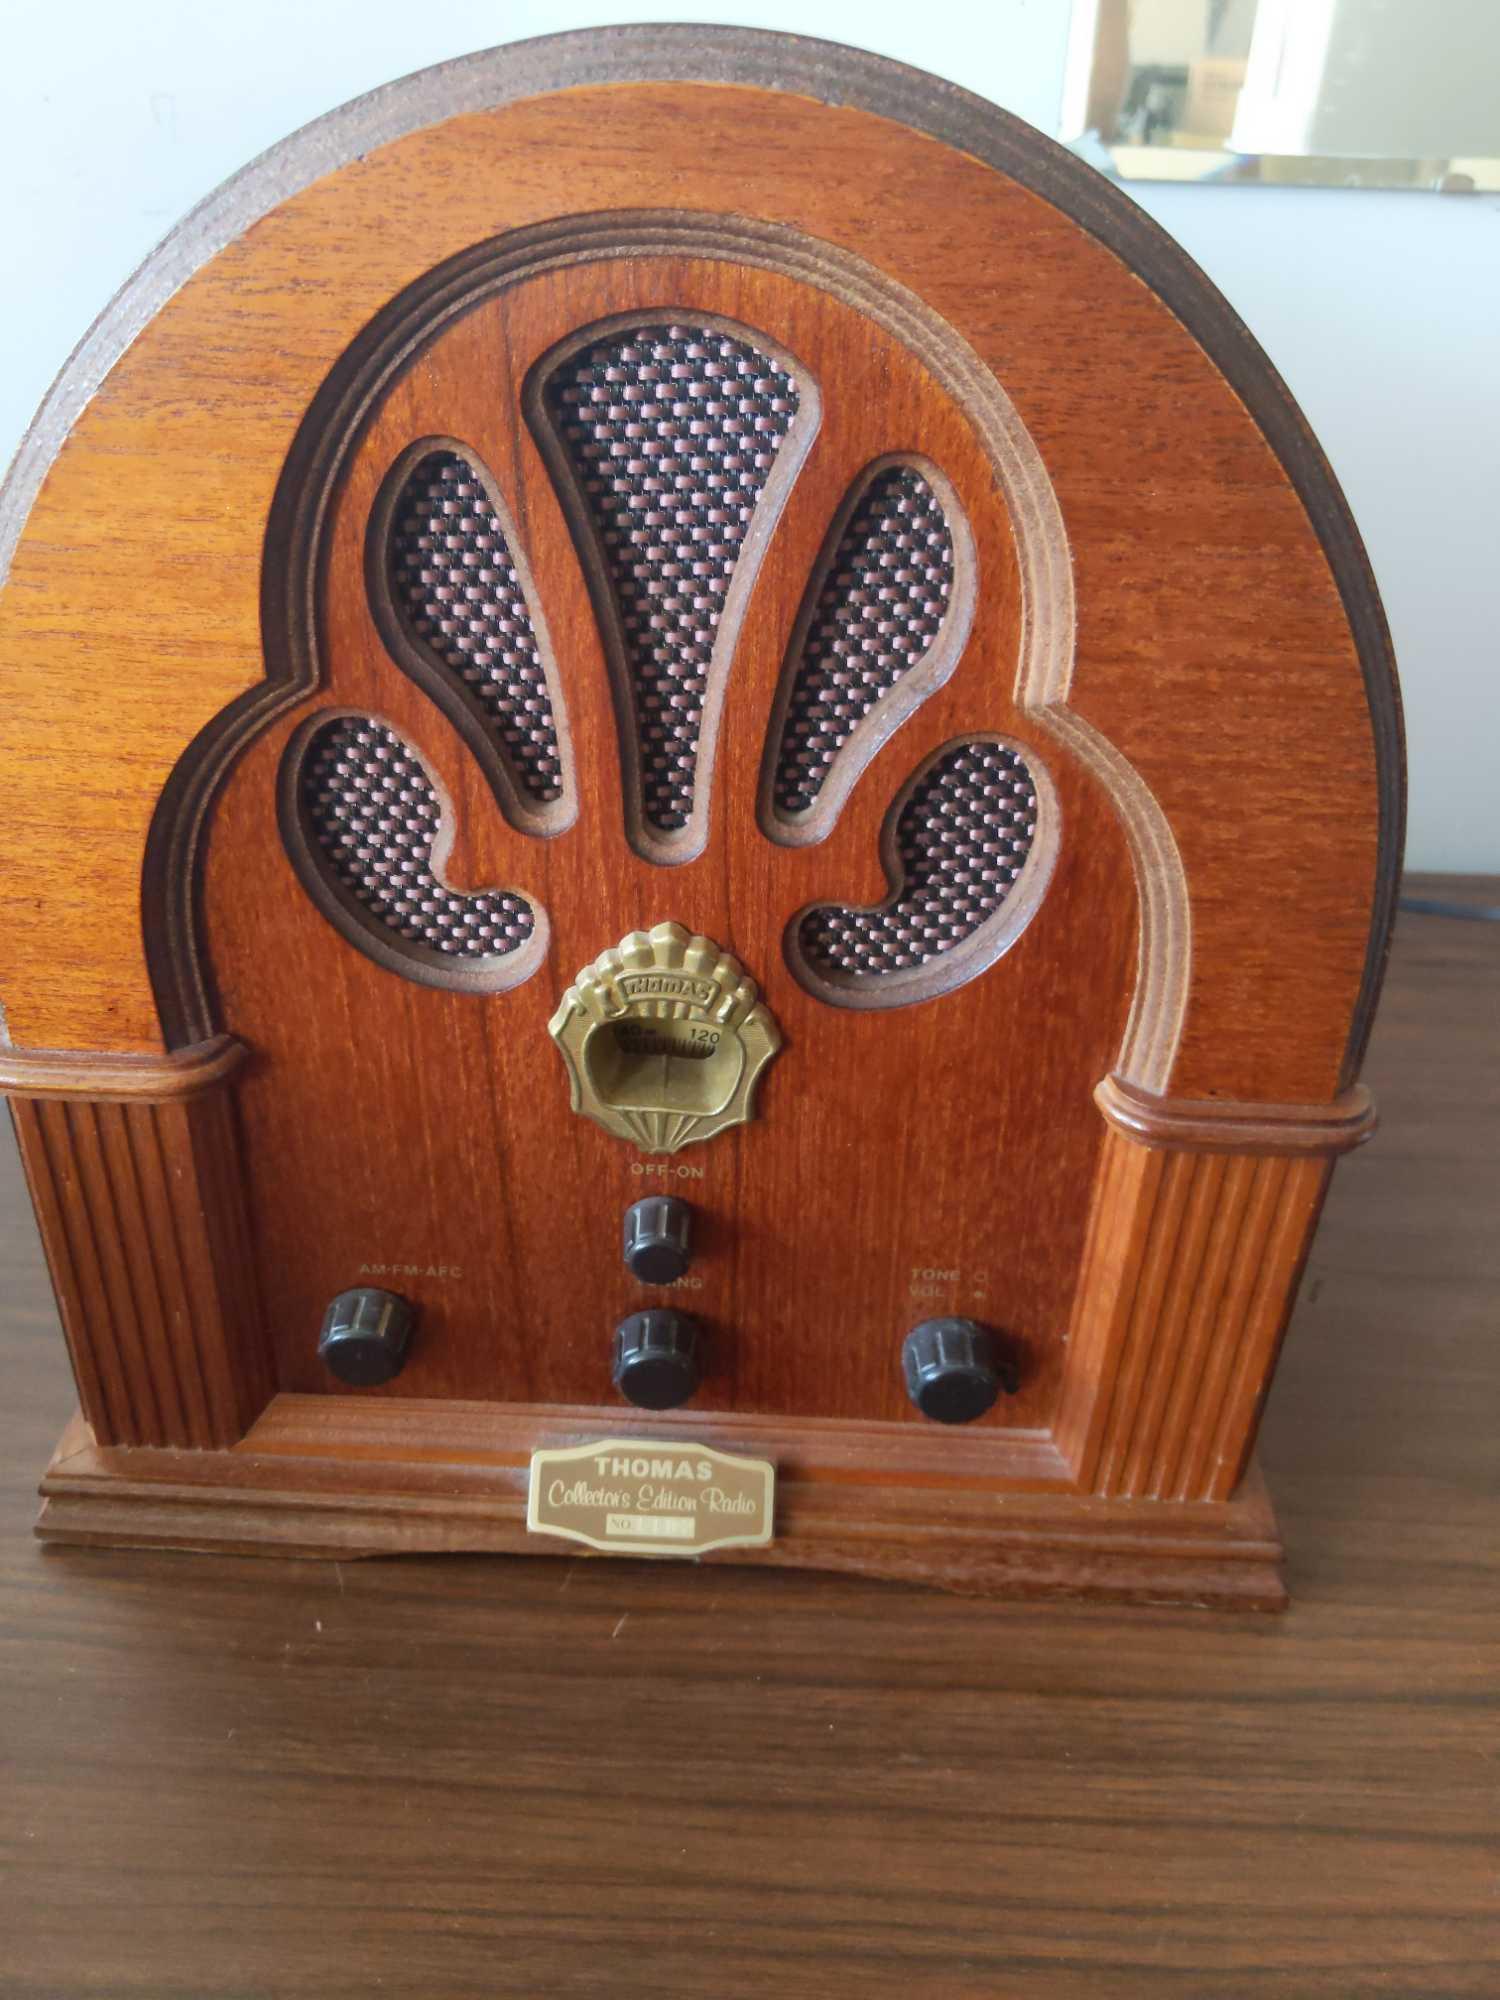 Reproduction "Vintage" Look Radio